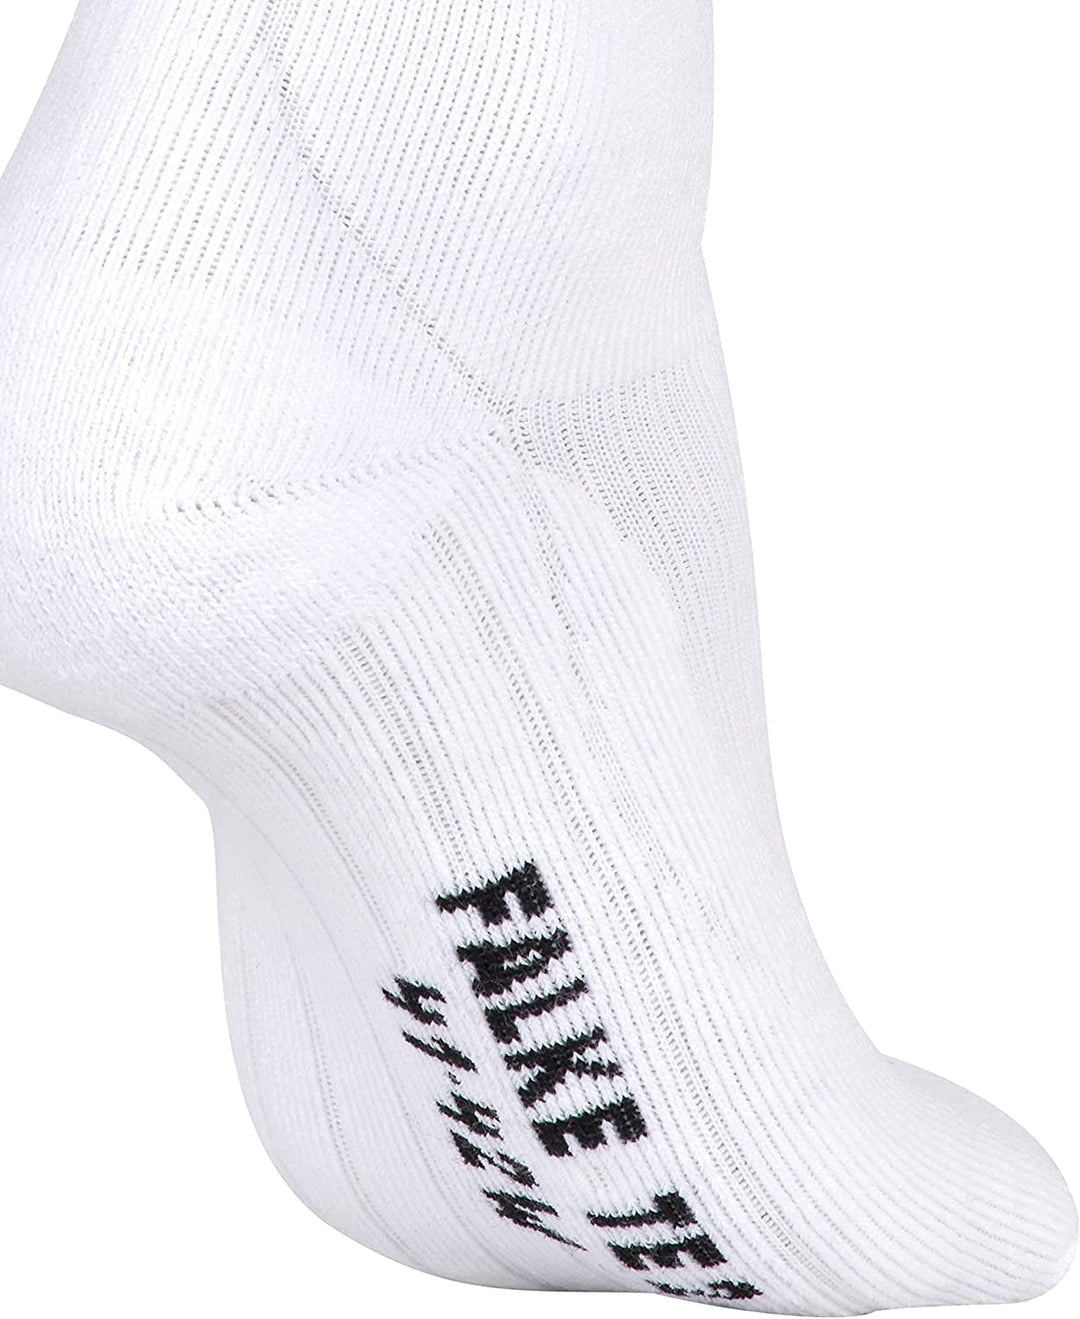 FALKE Women Tennis TE2 Short Socks - Cotton Blend, White (White 2000), UK 5.5-6.